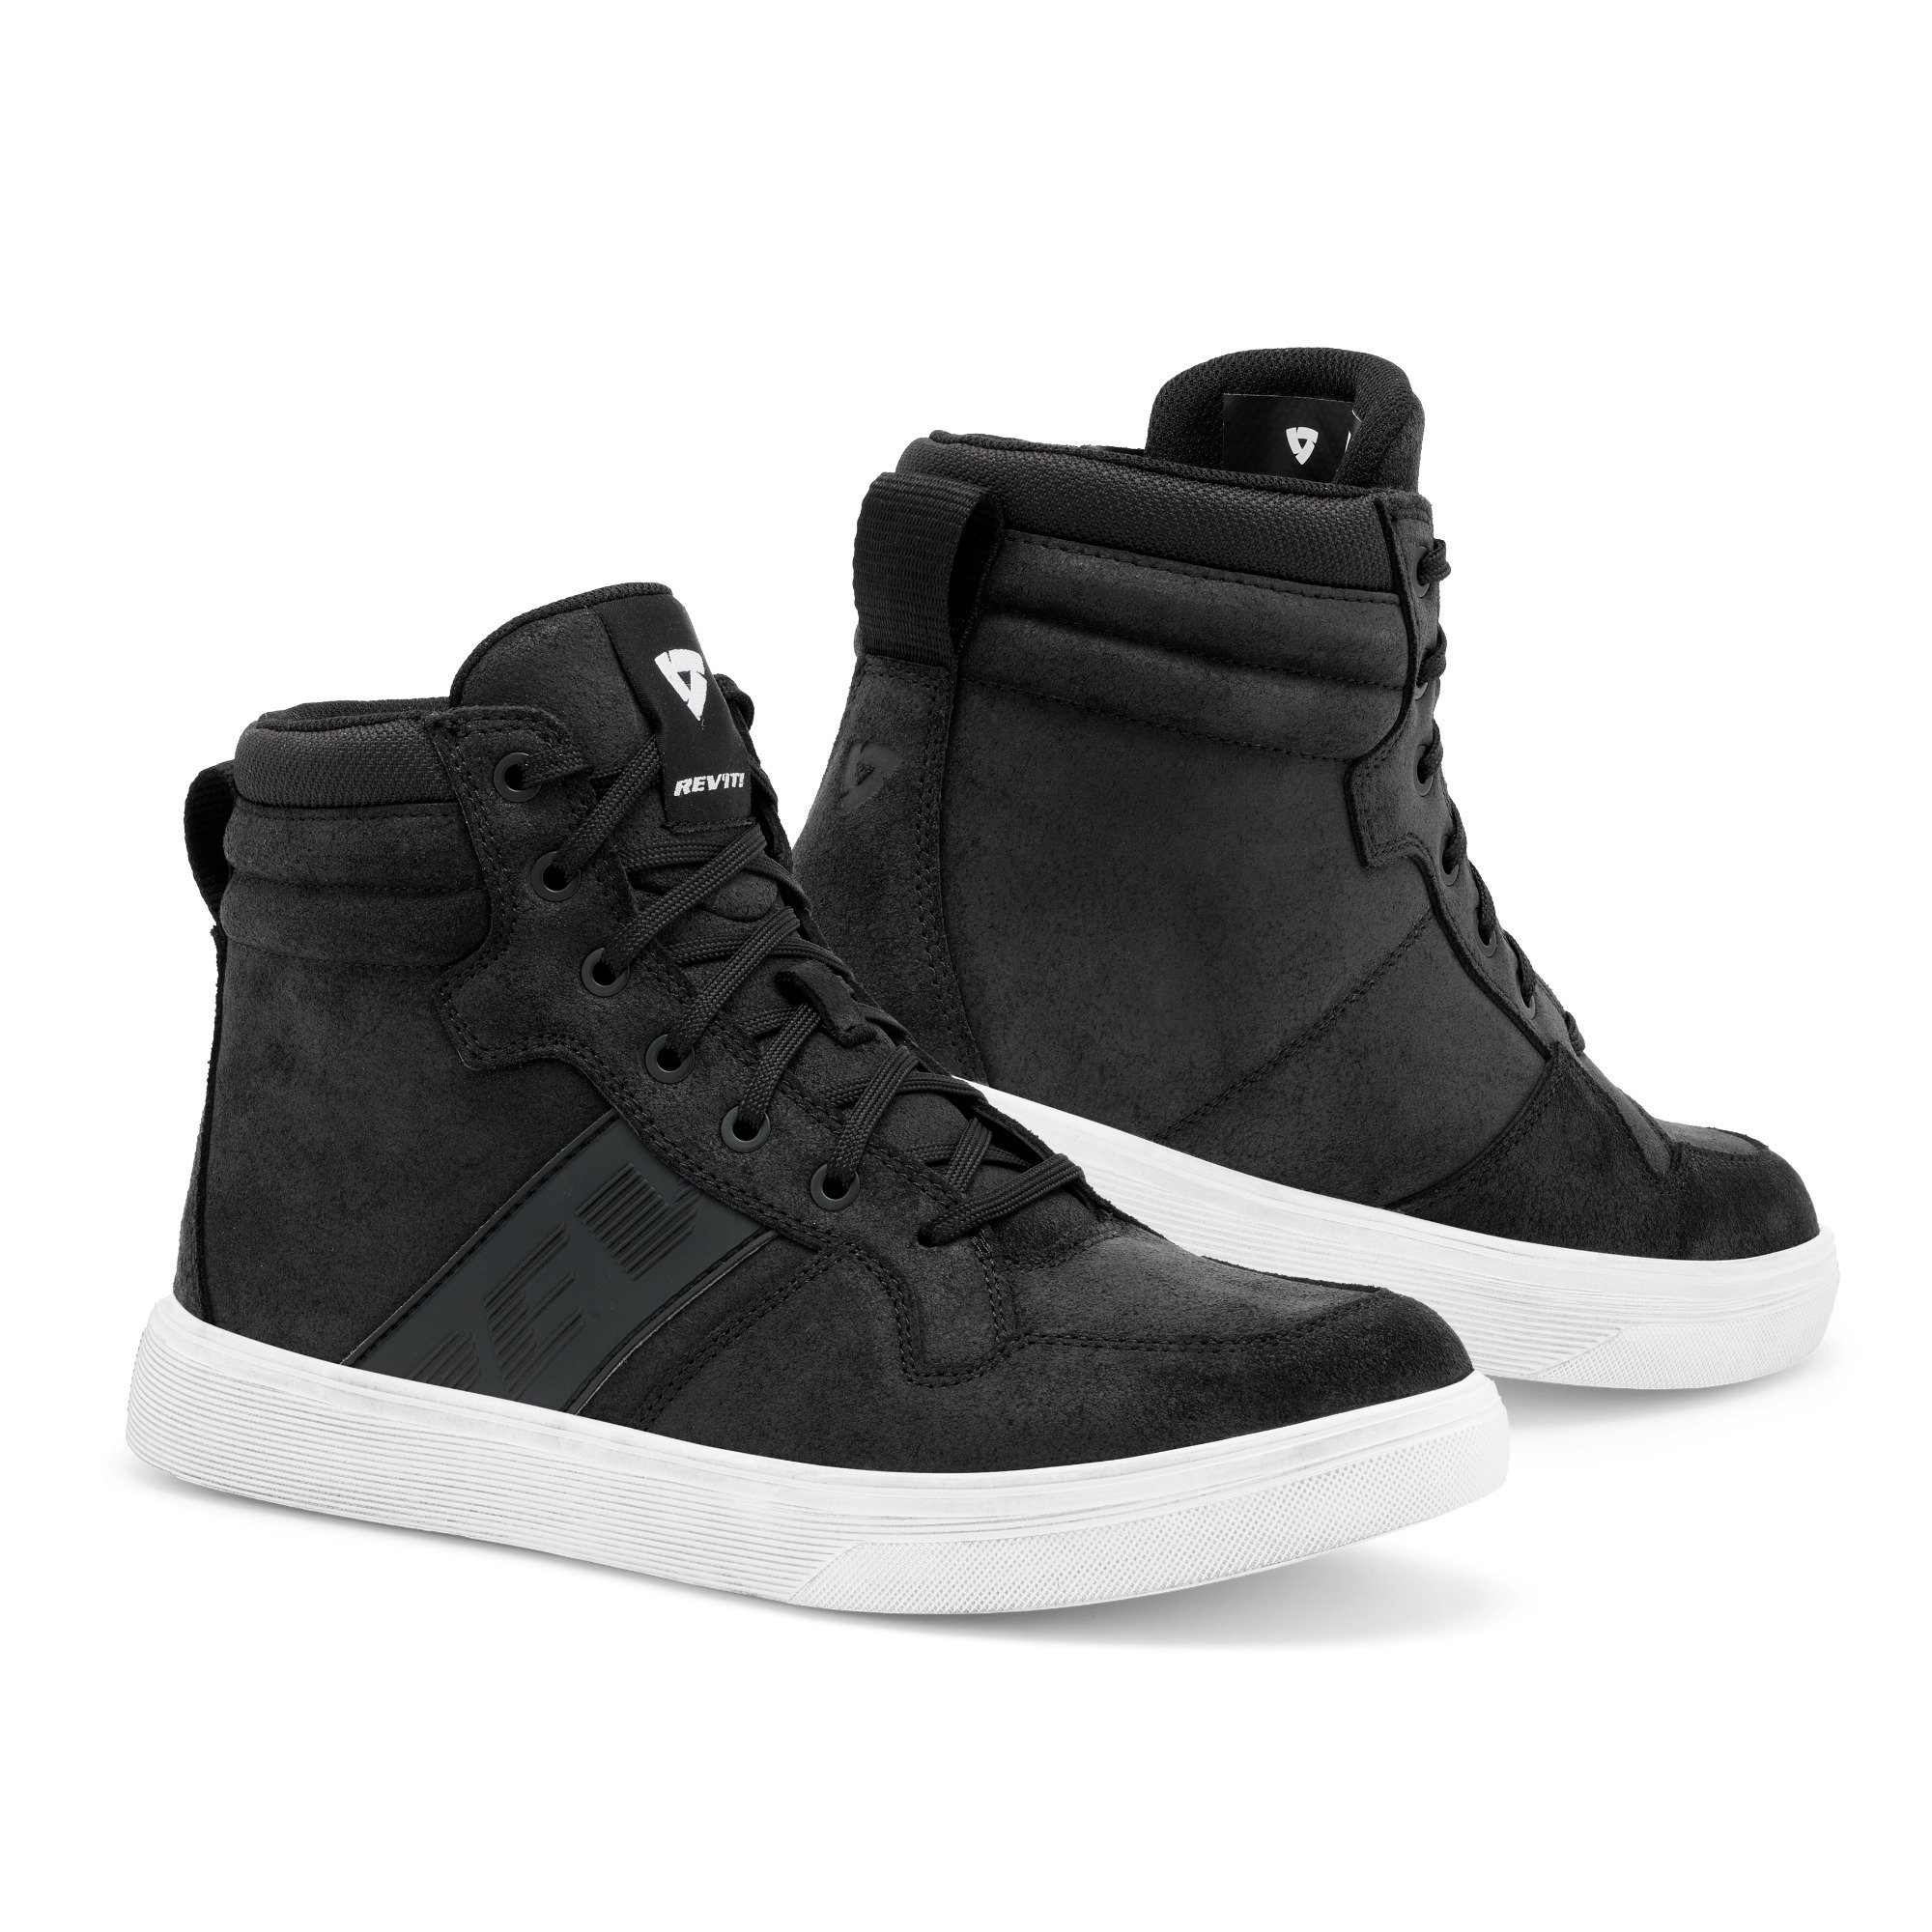 Image of REV'IT! Kick Shoes Black White Size 42 ID 8700001357500